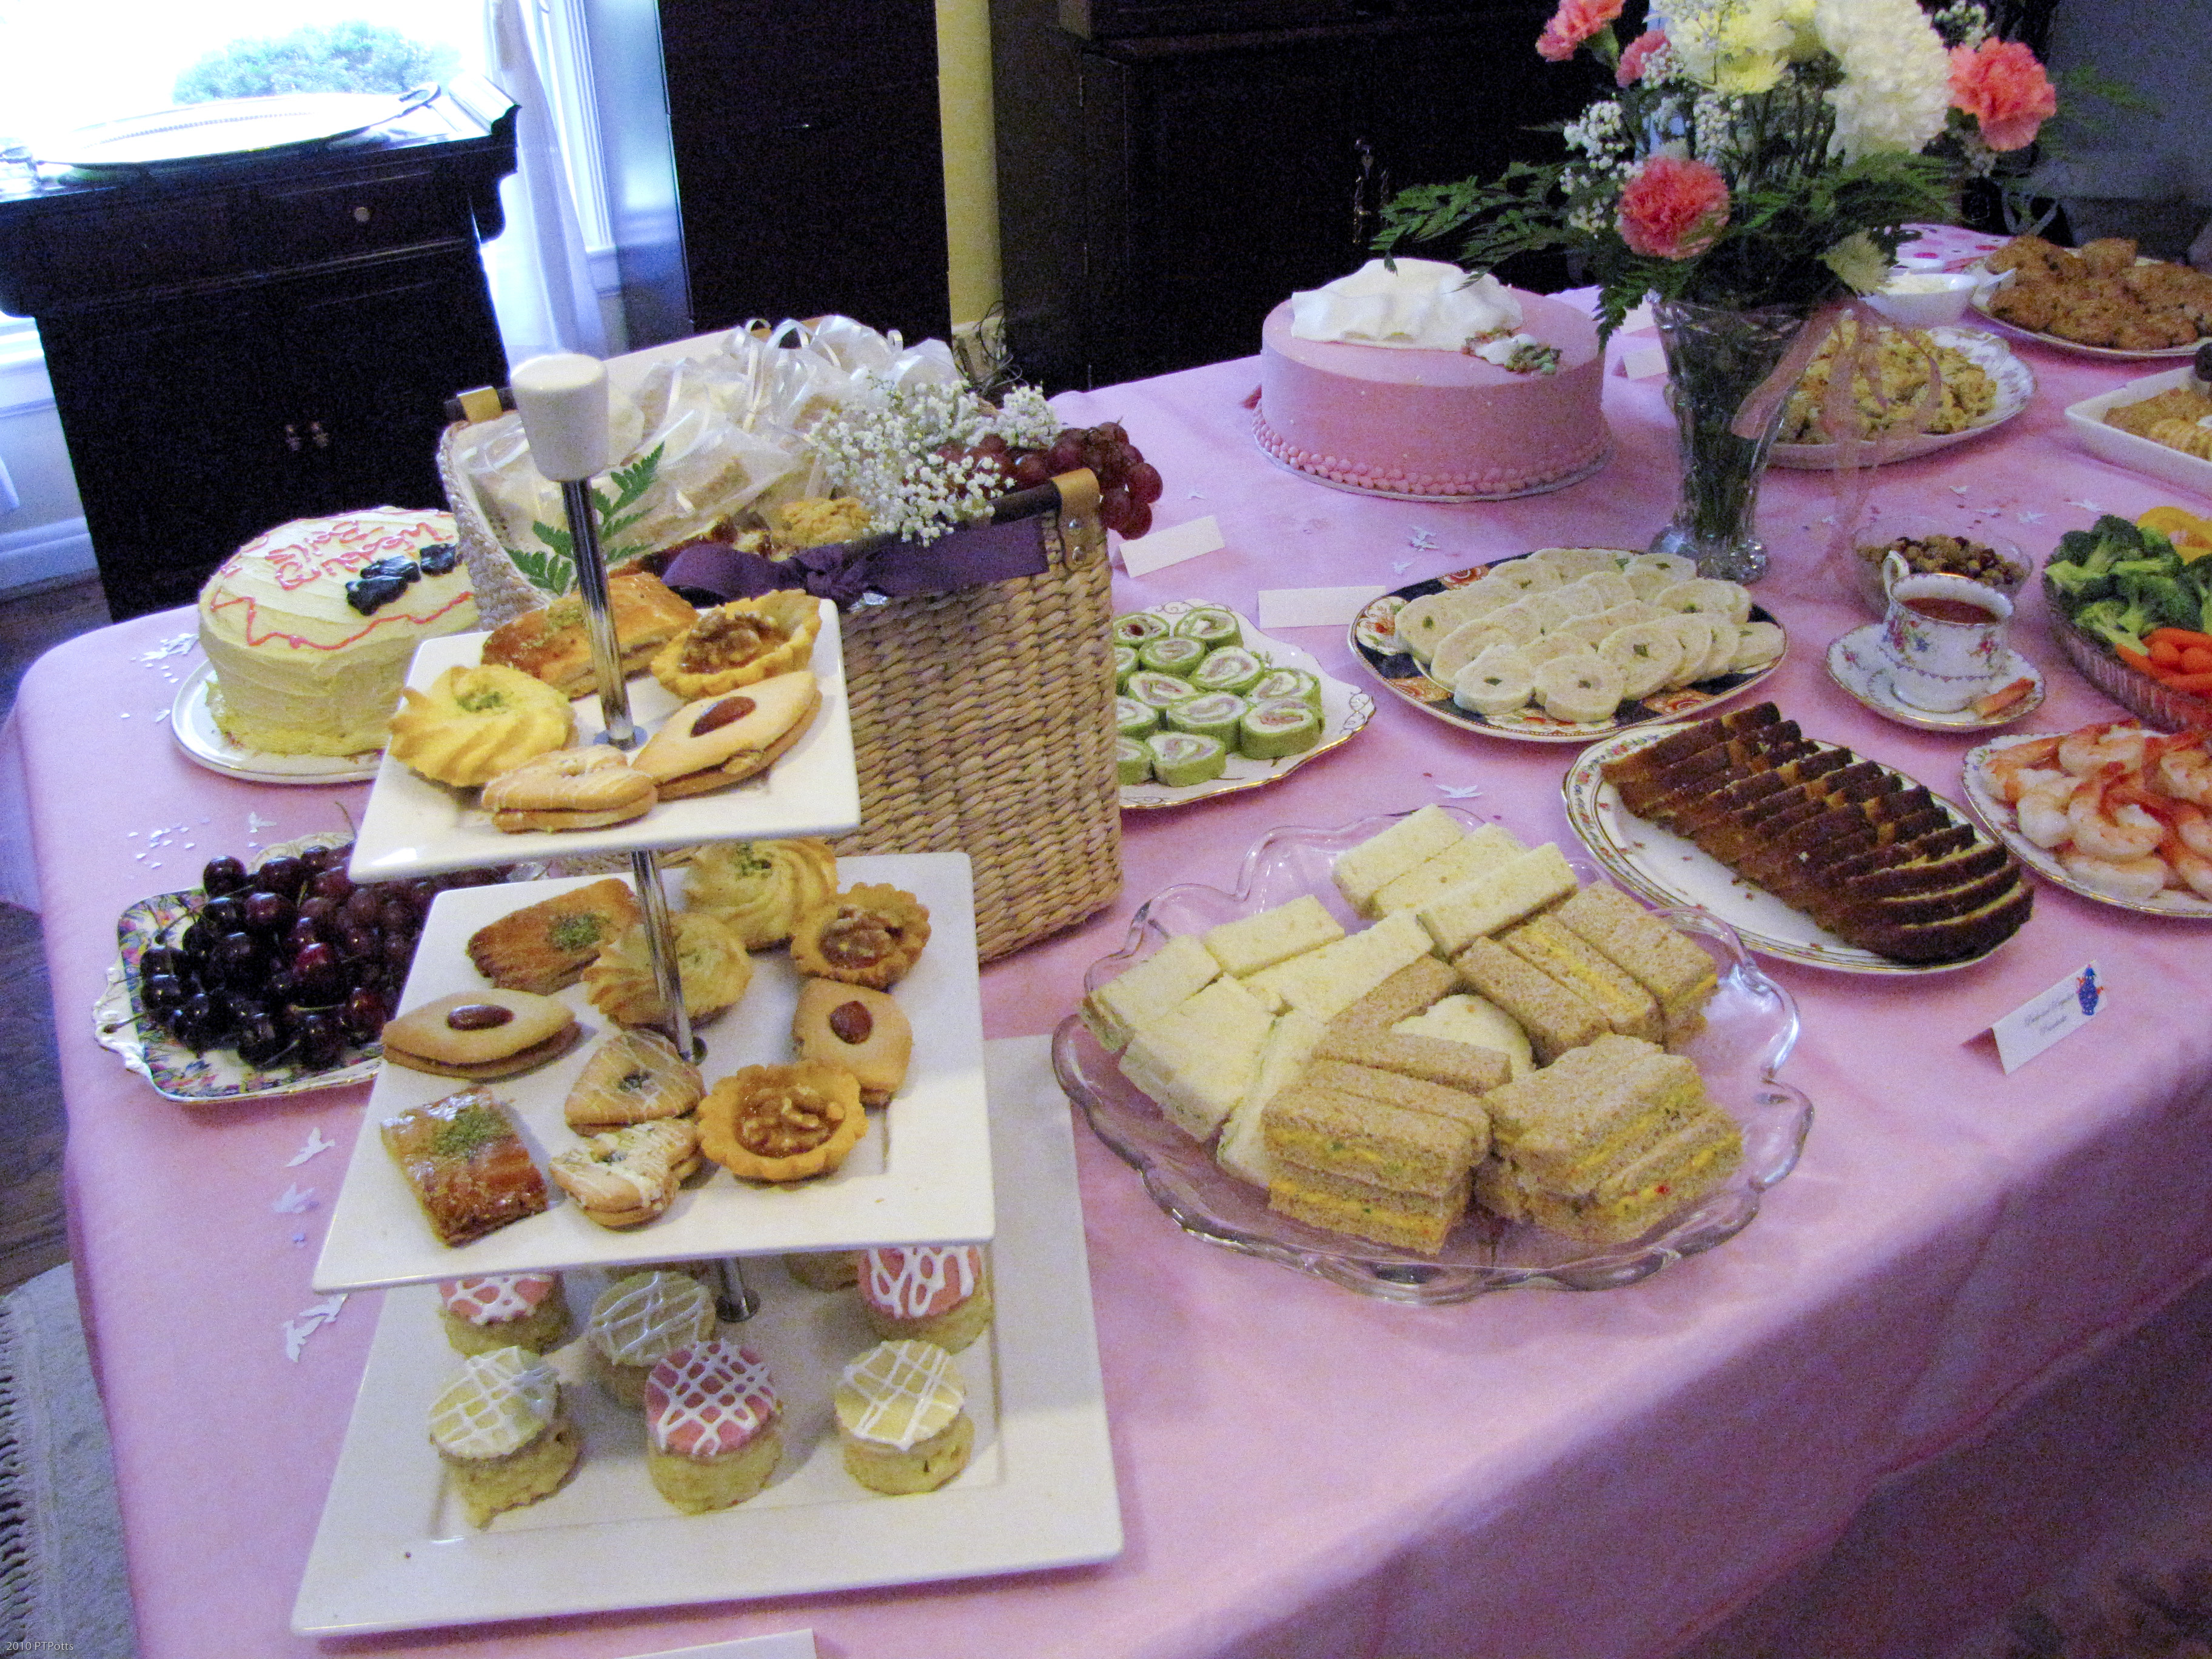 Tea Party Shower Ideas
 A Jane Austen Tea Party Bridal Shower